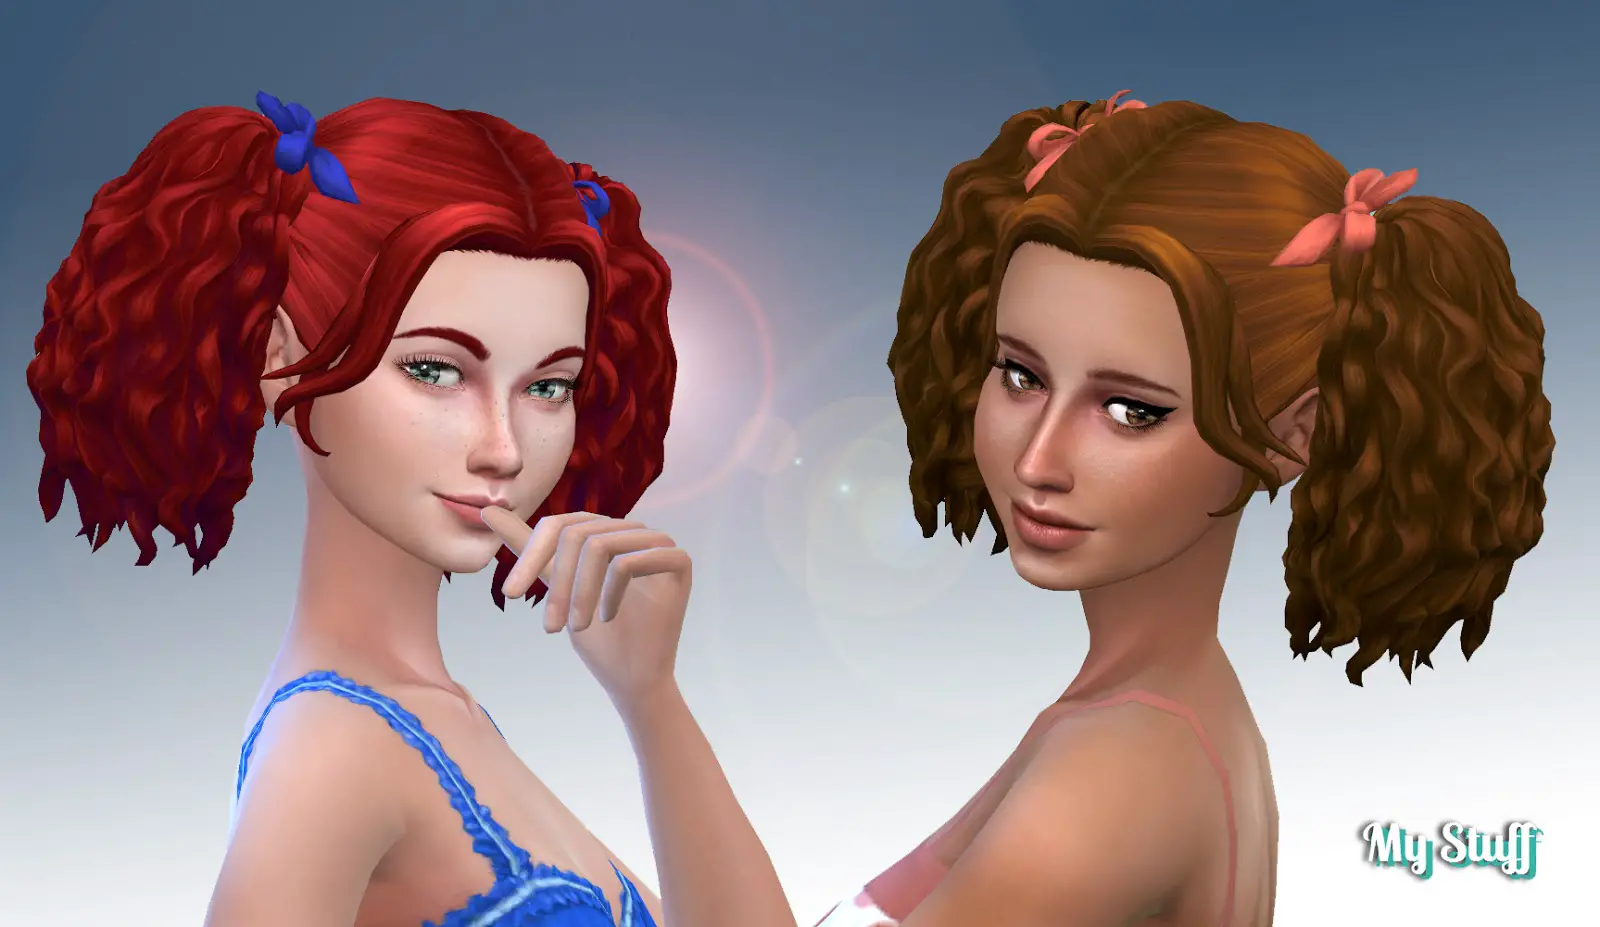 Sims 4 Hairs ~ Mystufforigin: Poppy Hair retextured